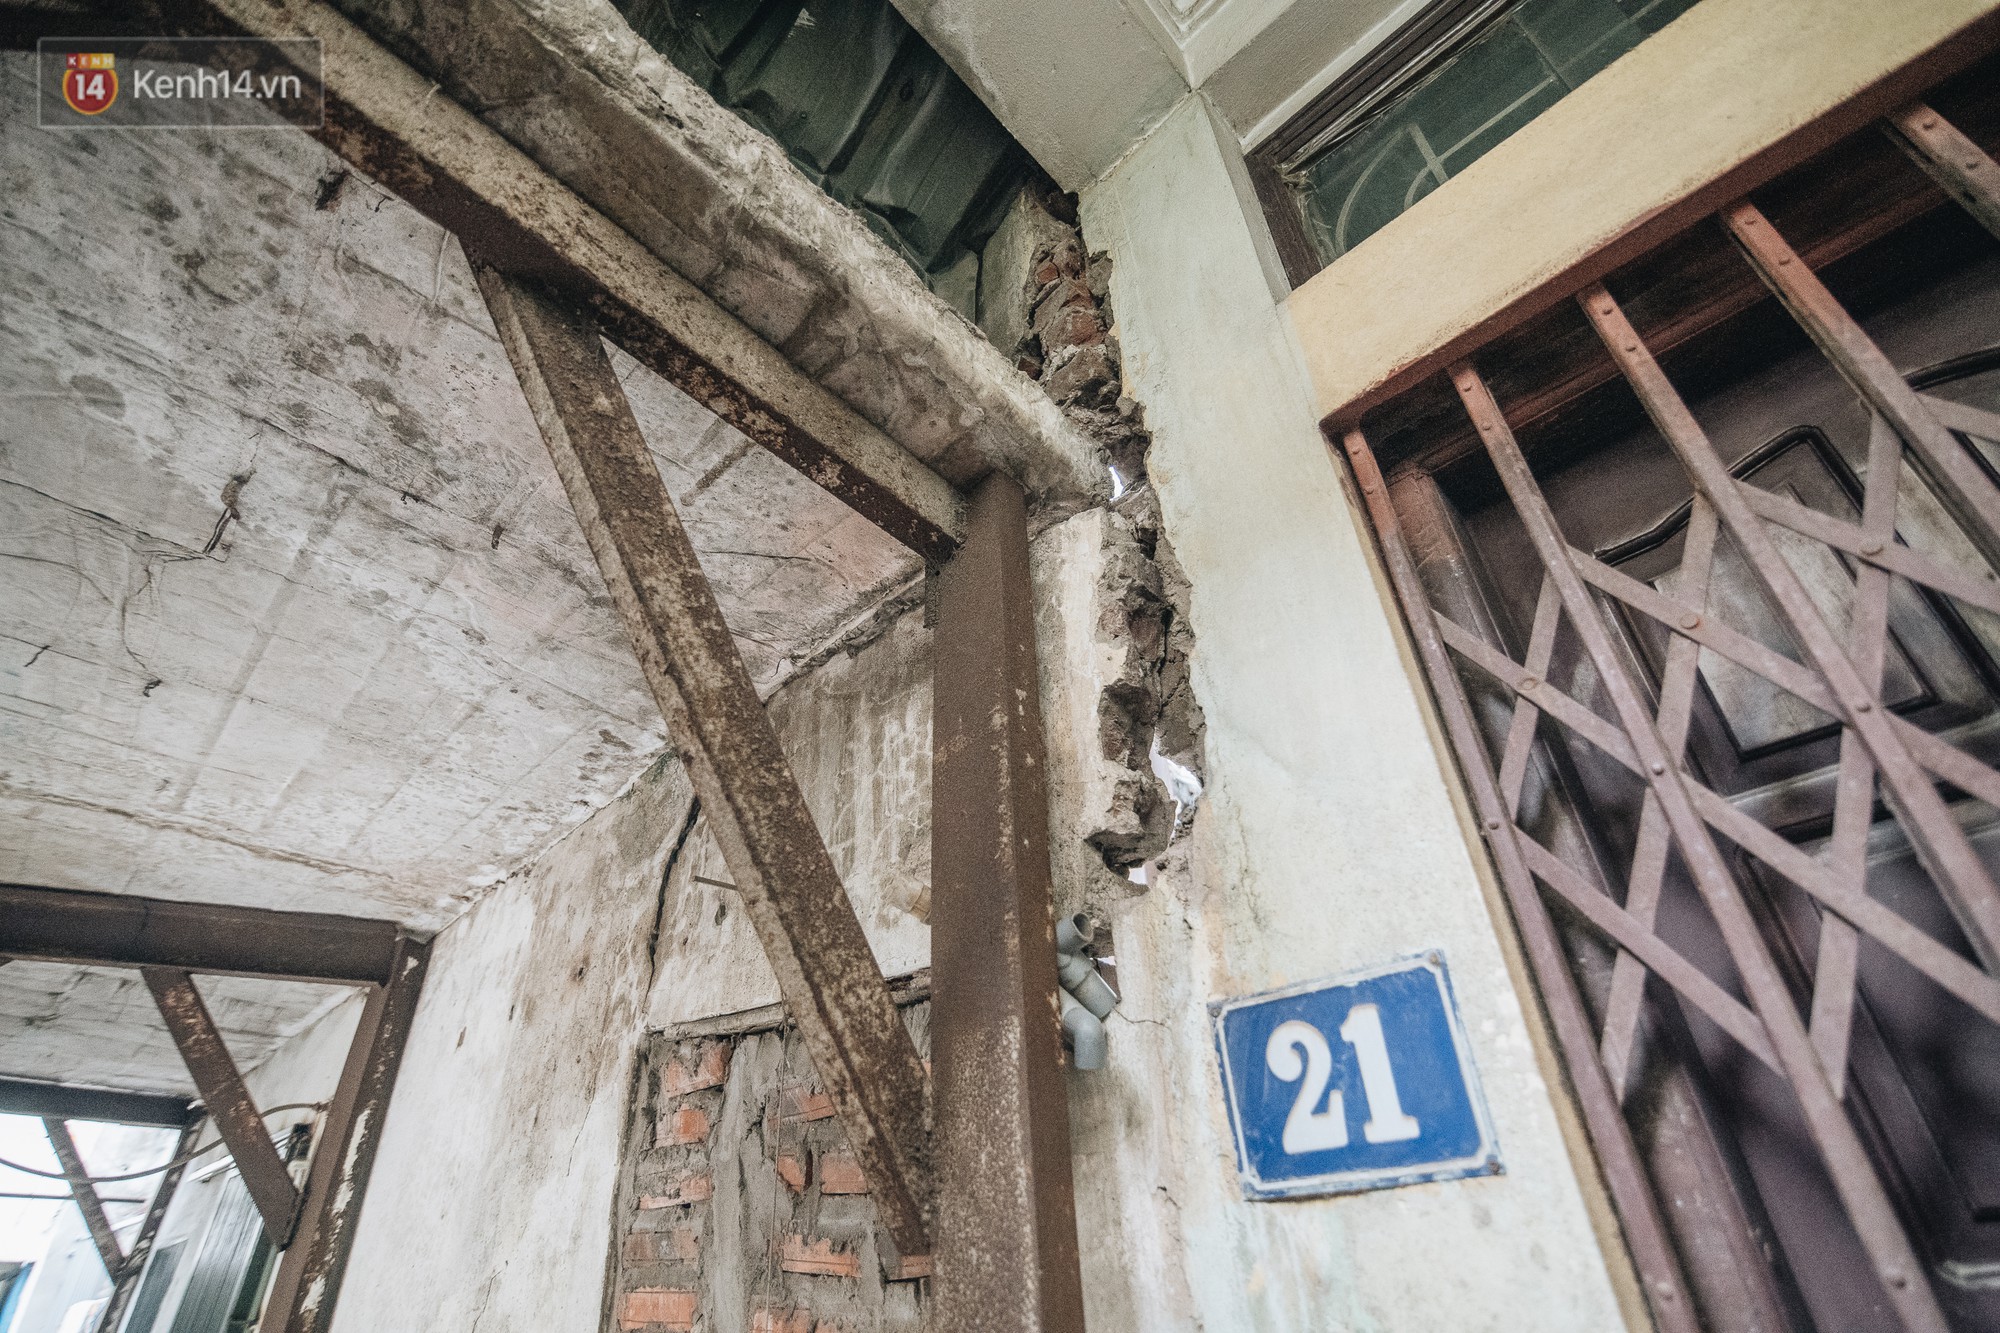 Kỳ lạ những căn nhà tầm gửi, chống nạng chờ sập suốt 10 năm qua ở Hà Nội - Ảnh 7.